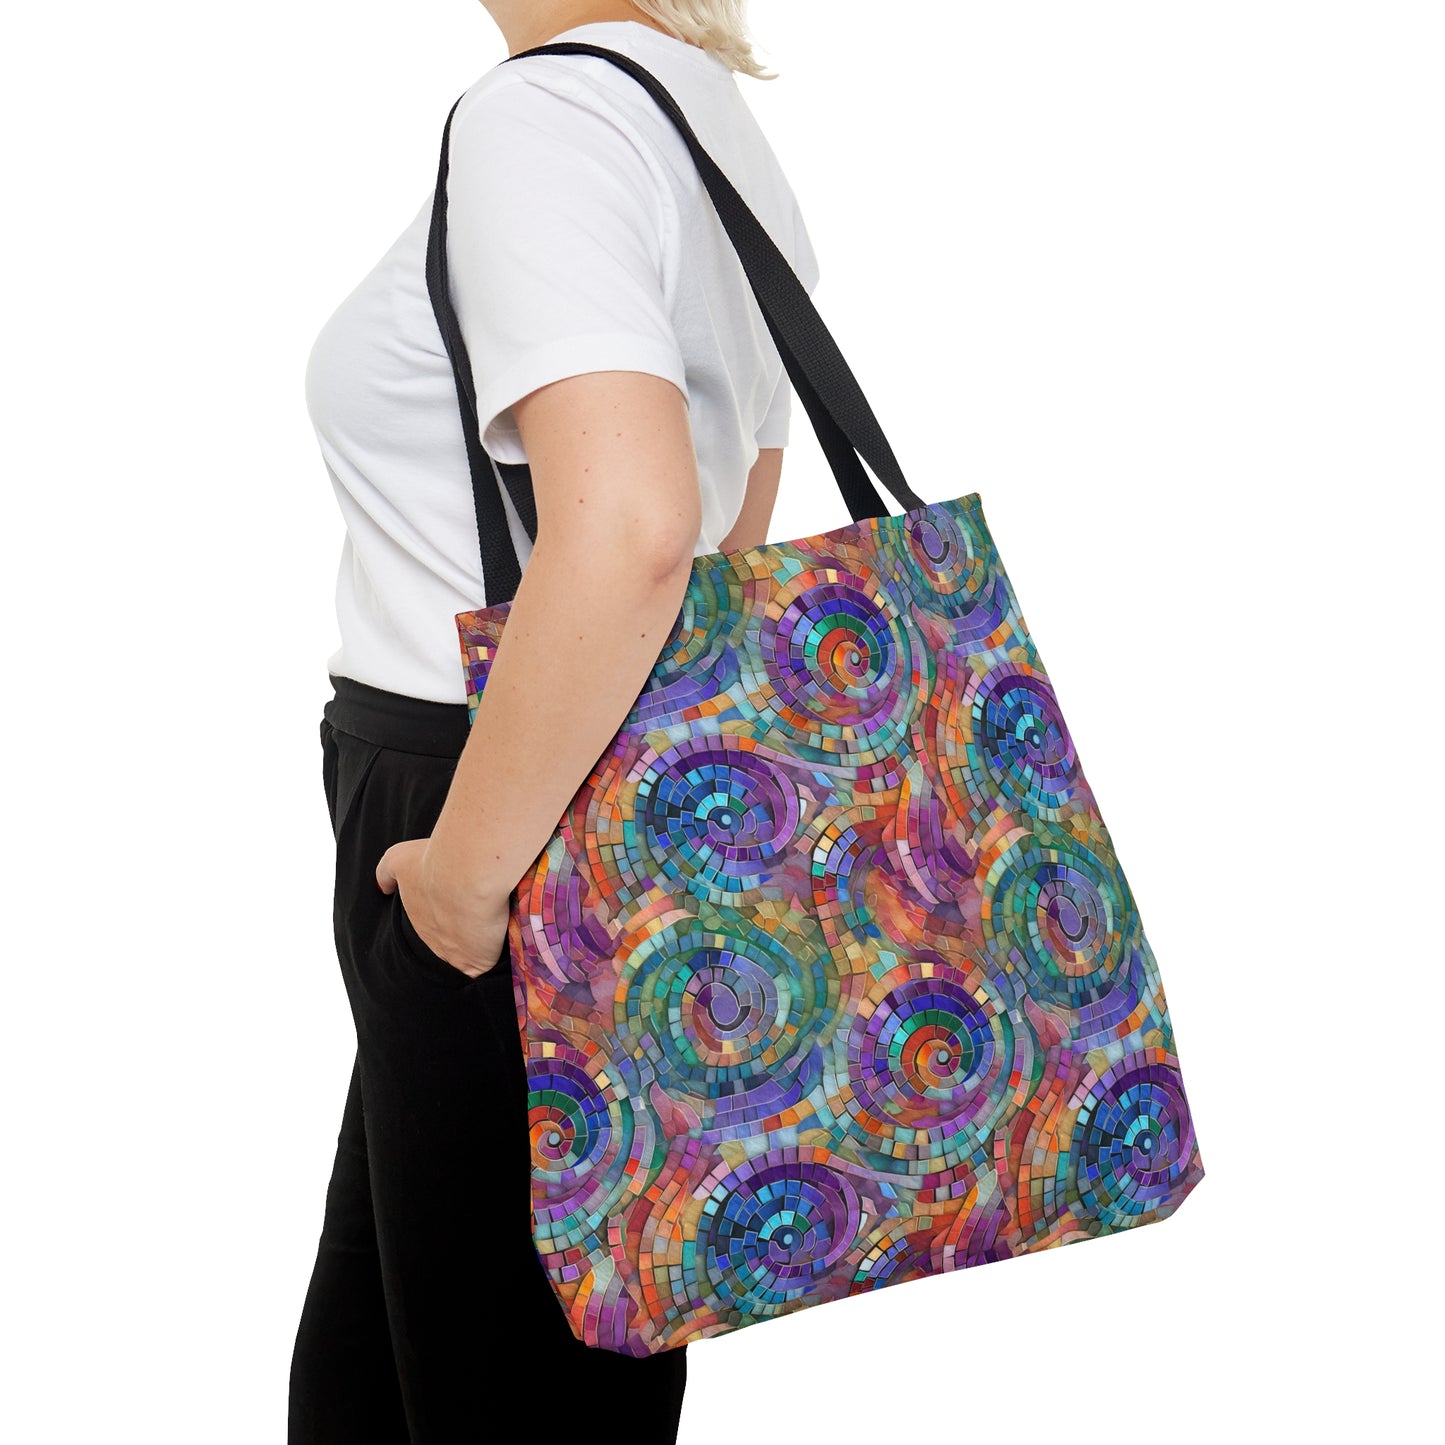 Beautiful and Vibrant - Gemstone Swirl Mosaic 03 - Useful, Multipurpose Bag -Tote Bag (AOP)